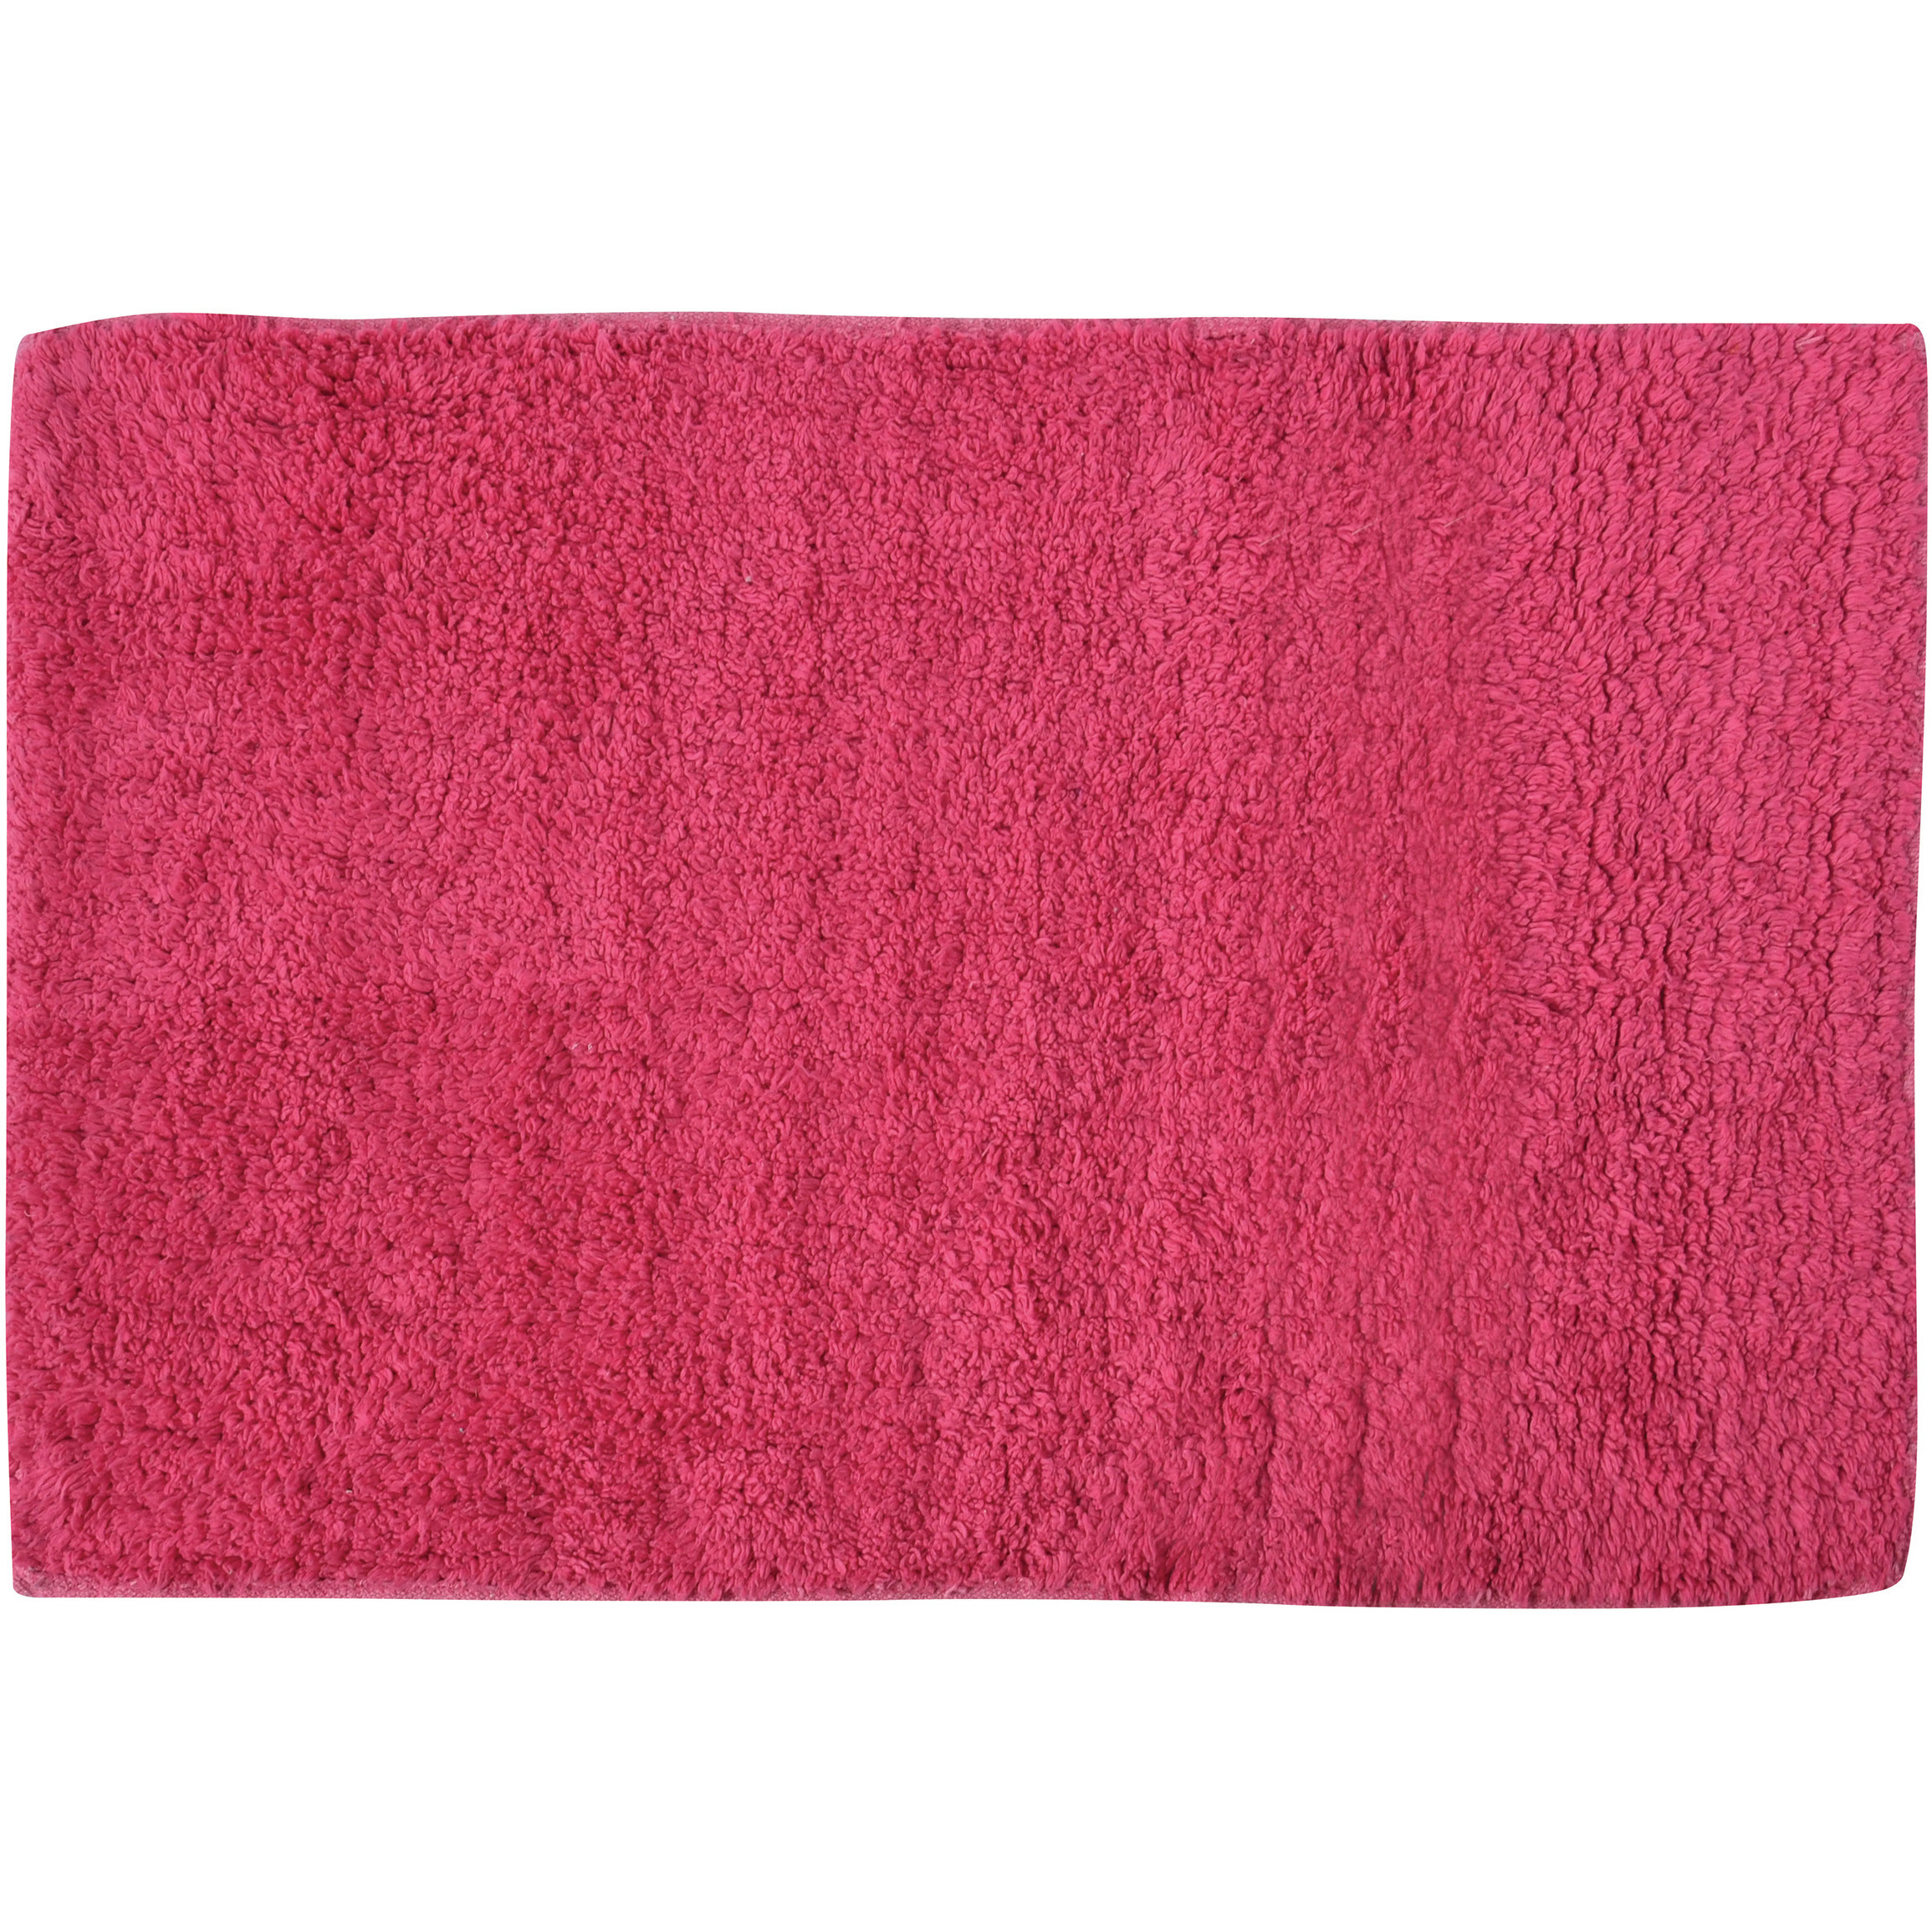 Badkamerkleedje-badmat voor op de vloer fuchsia roze 45 x 70 cm